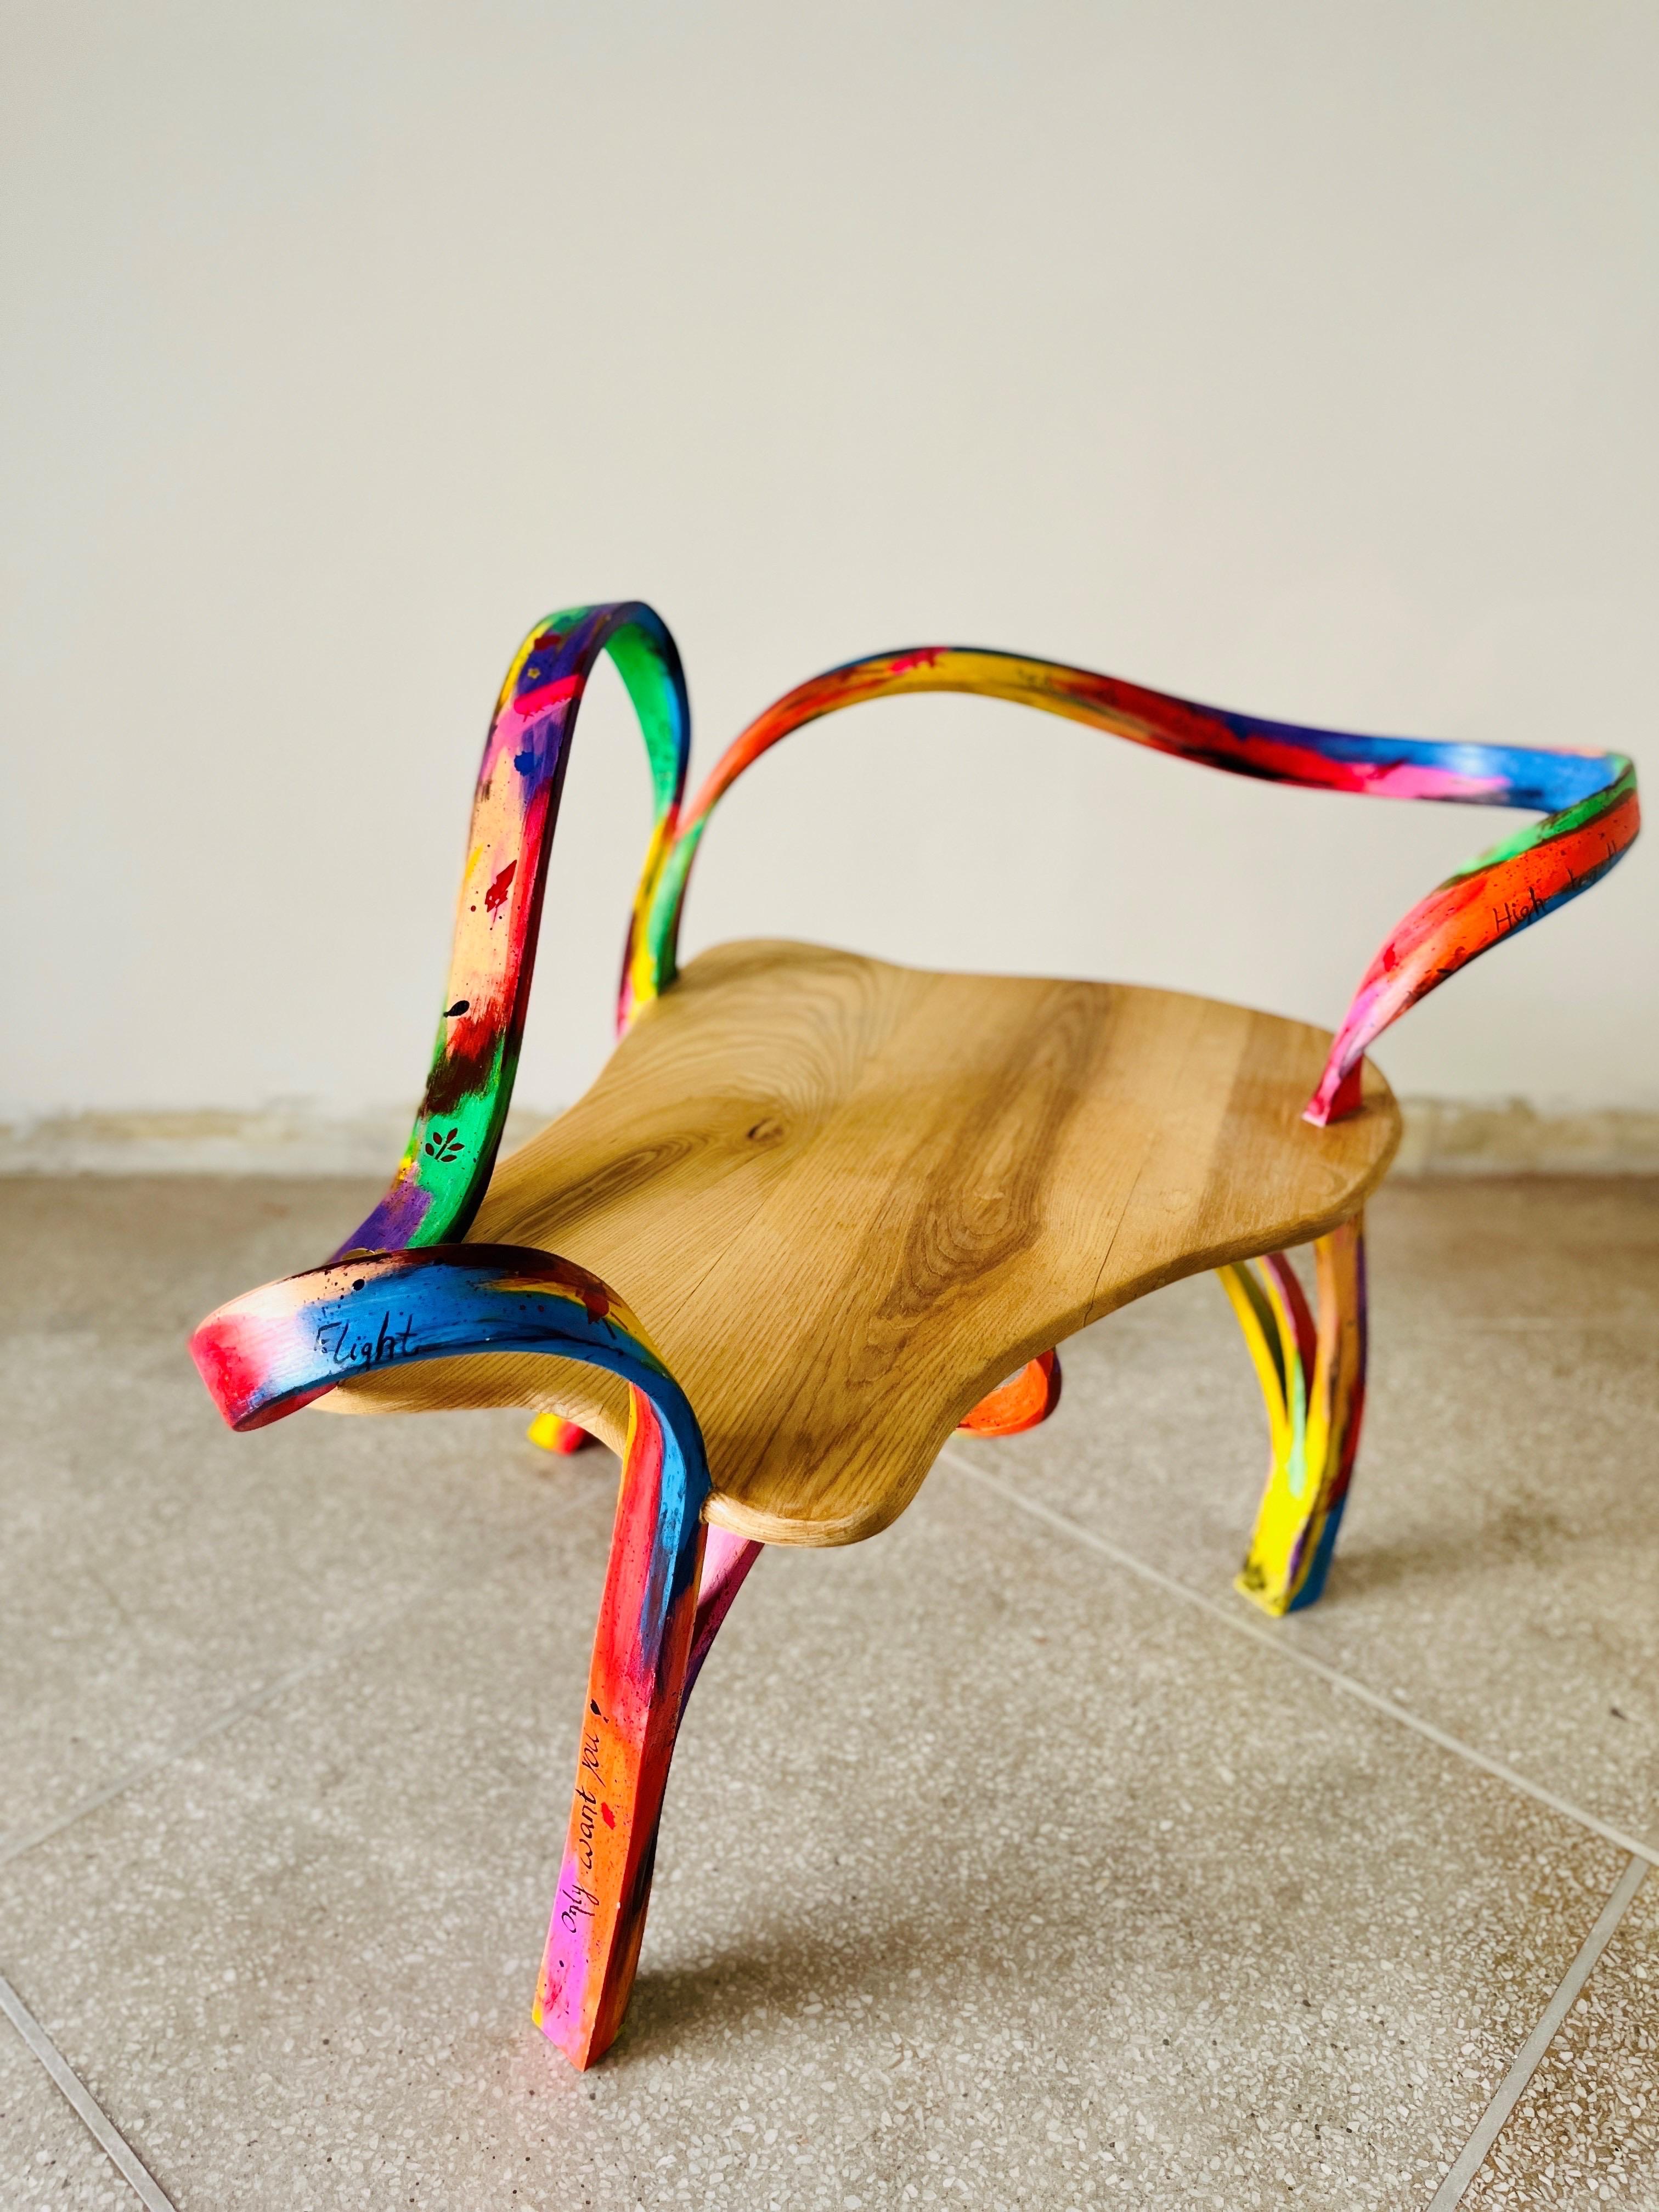 Une chaise monoplace conçue et produite par Raka Studio et finie en collaboration avec Hamza Khan Shirwani.

Fabriqué en bois de frêne massif par la société Bending Wood. Trois des pieds ont été réalisés à l'aide de la technique de pliage du bois